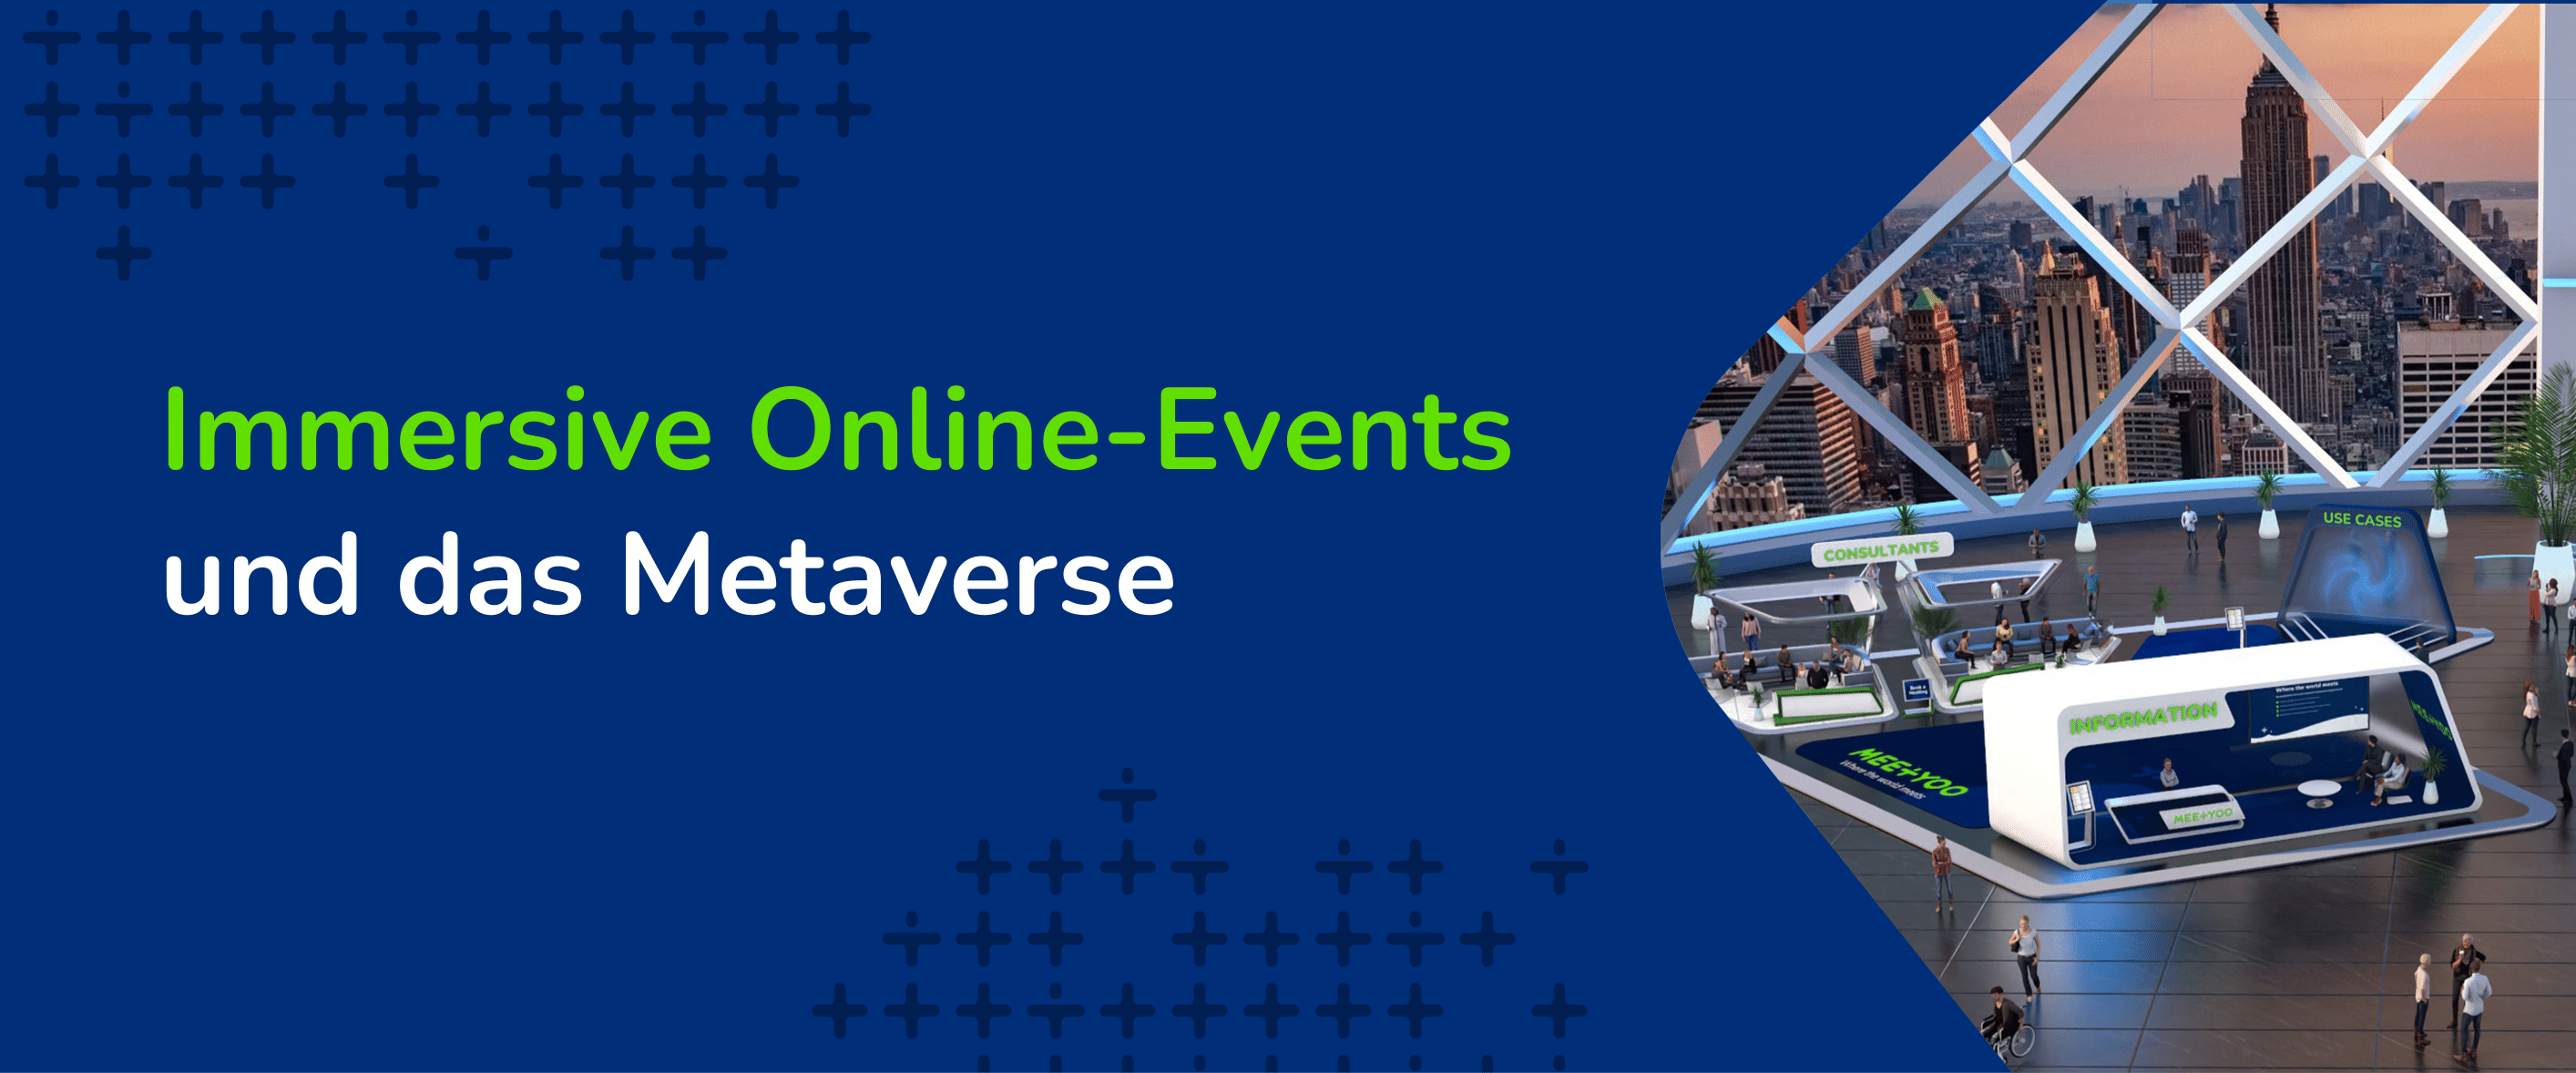 Metaverse und virtuelle Events - MEETYOO